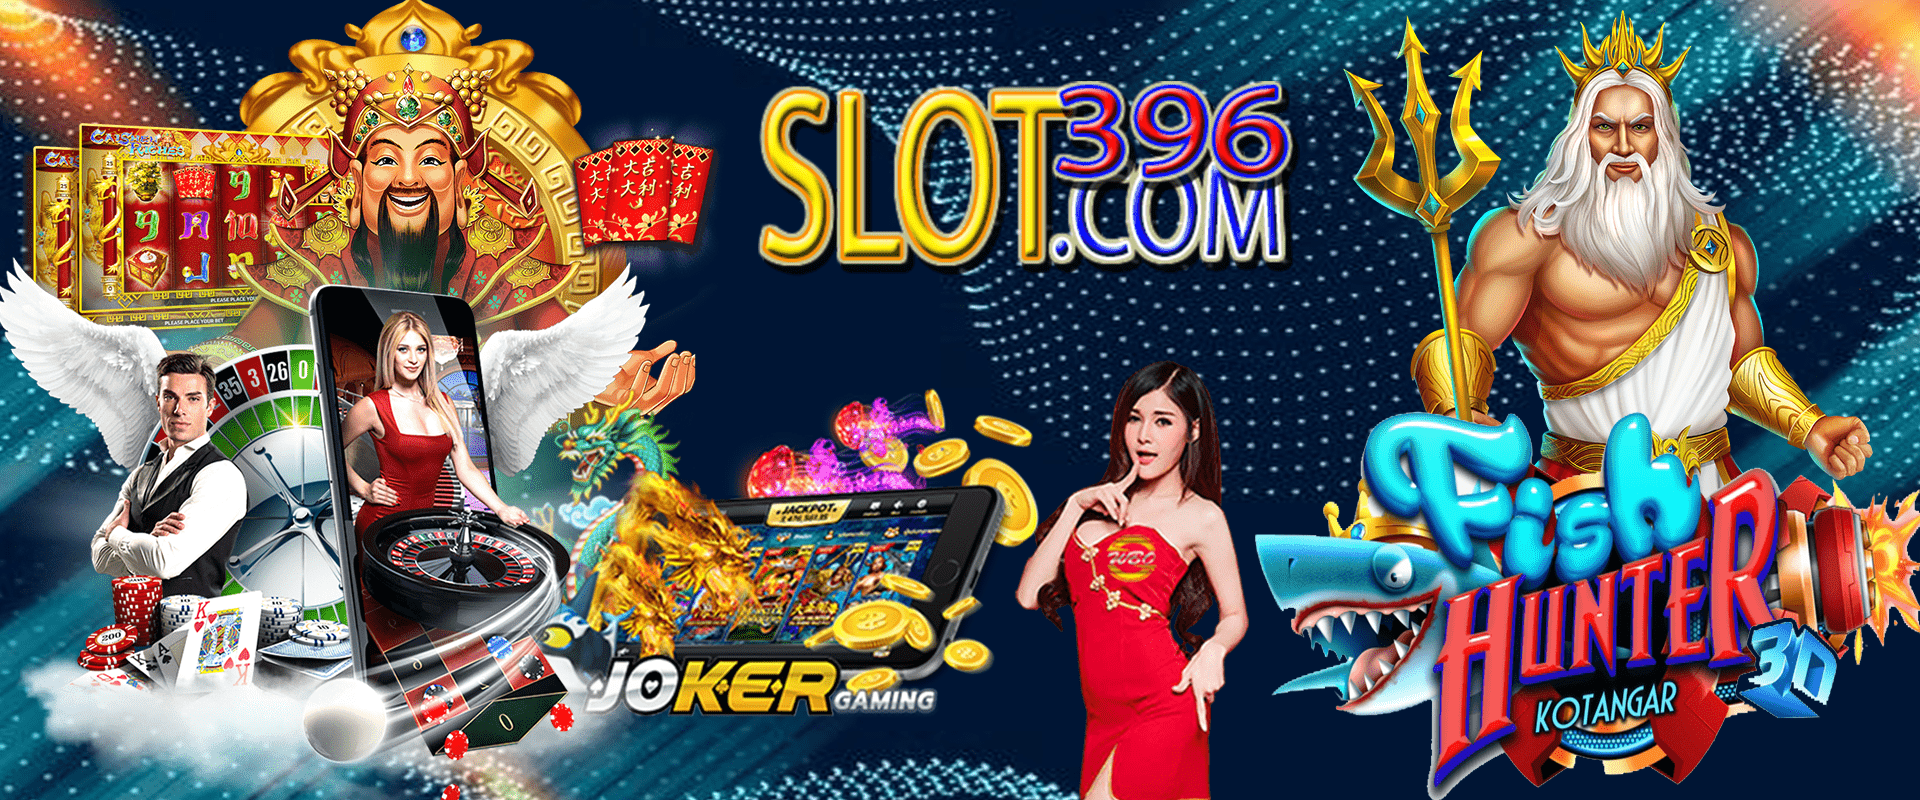 Slot396 | Link Login Situs Slot 396 Mobile Apk Download Betonklik Indo